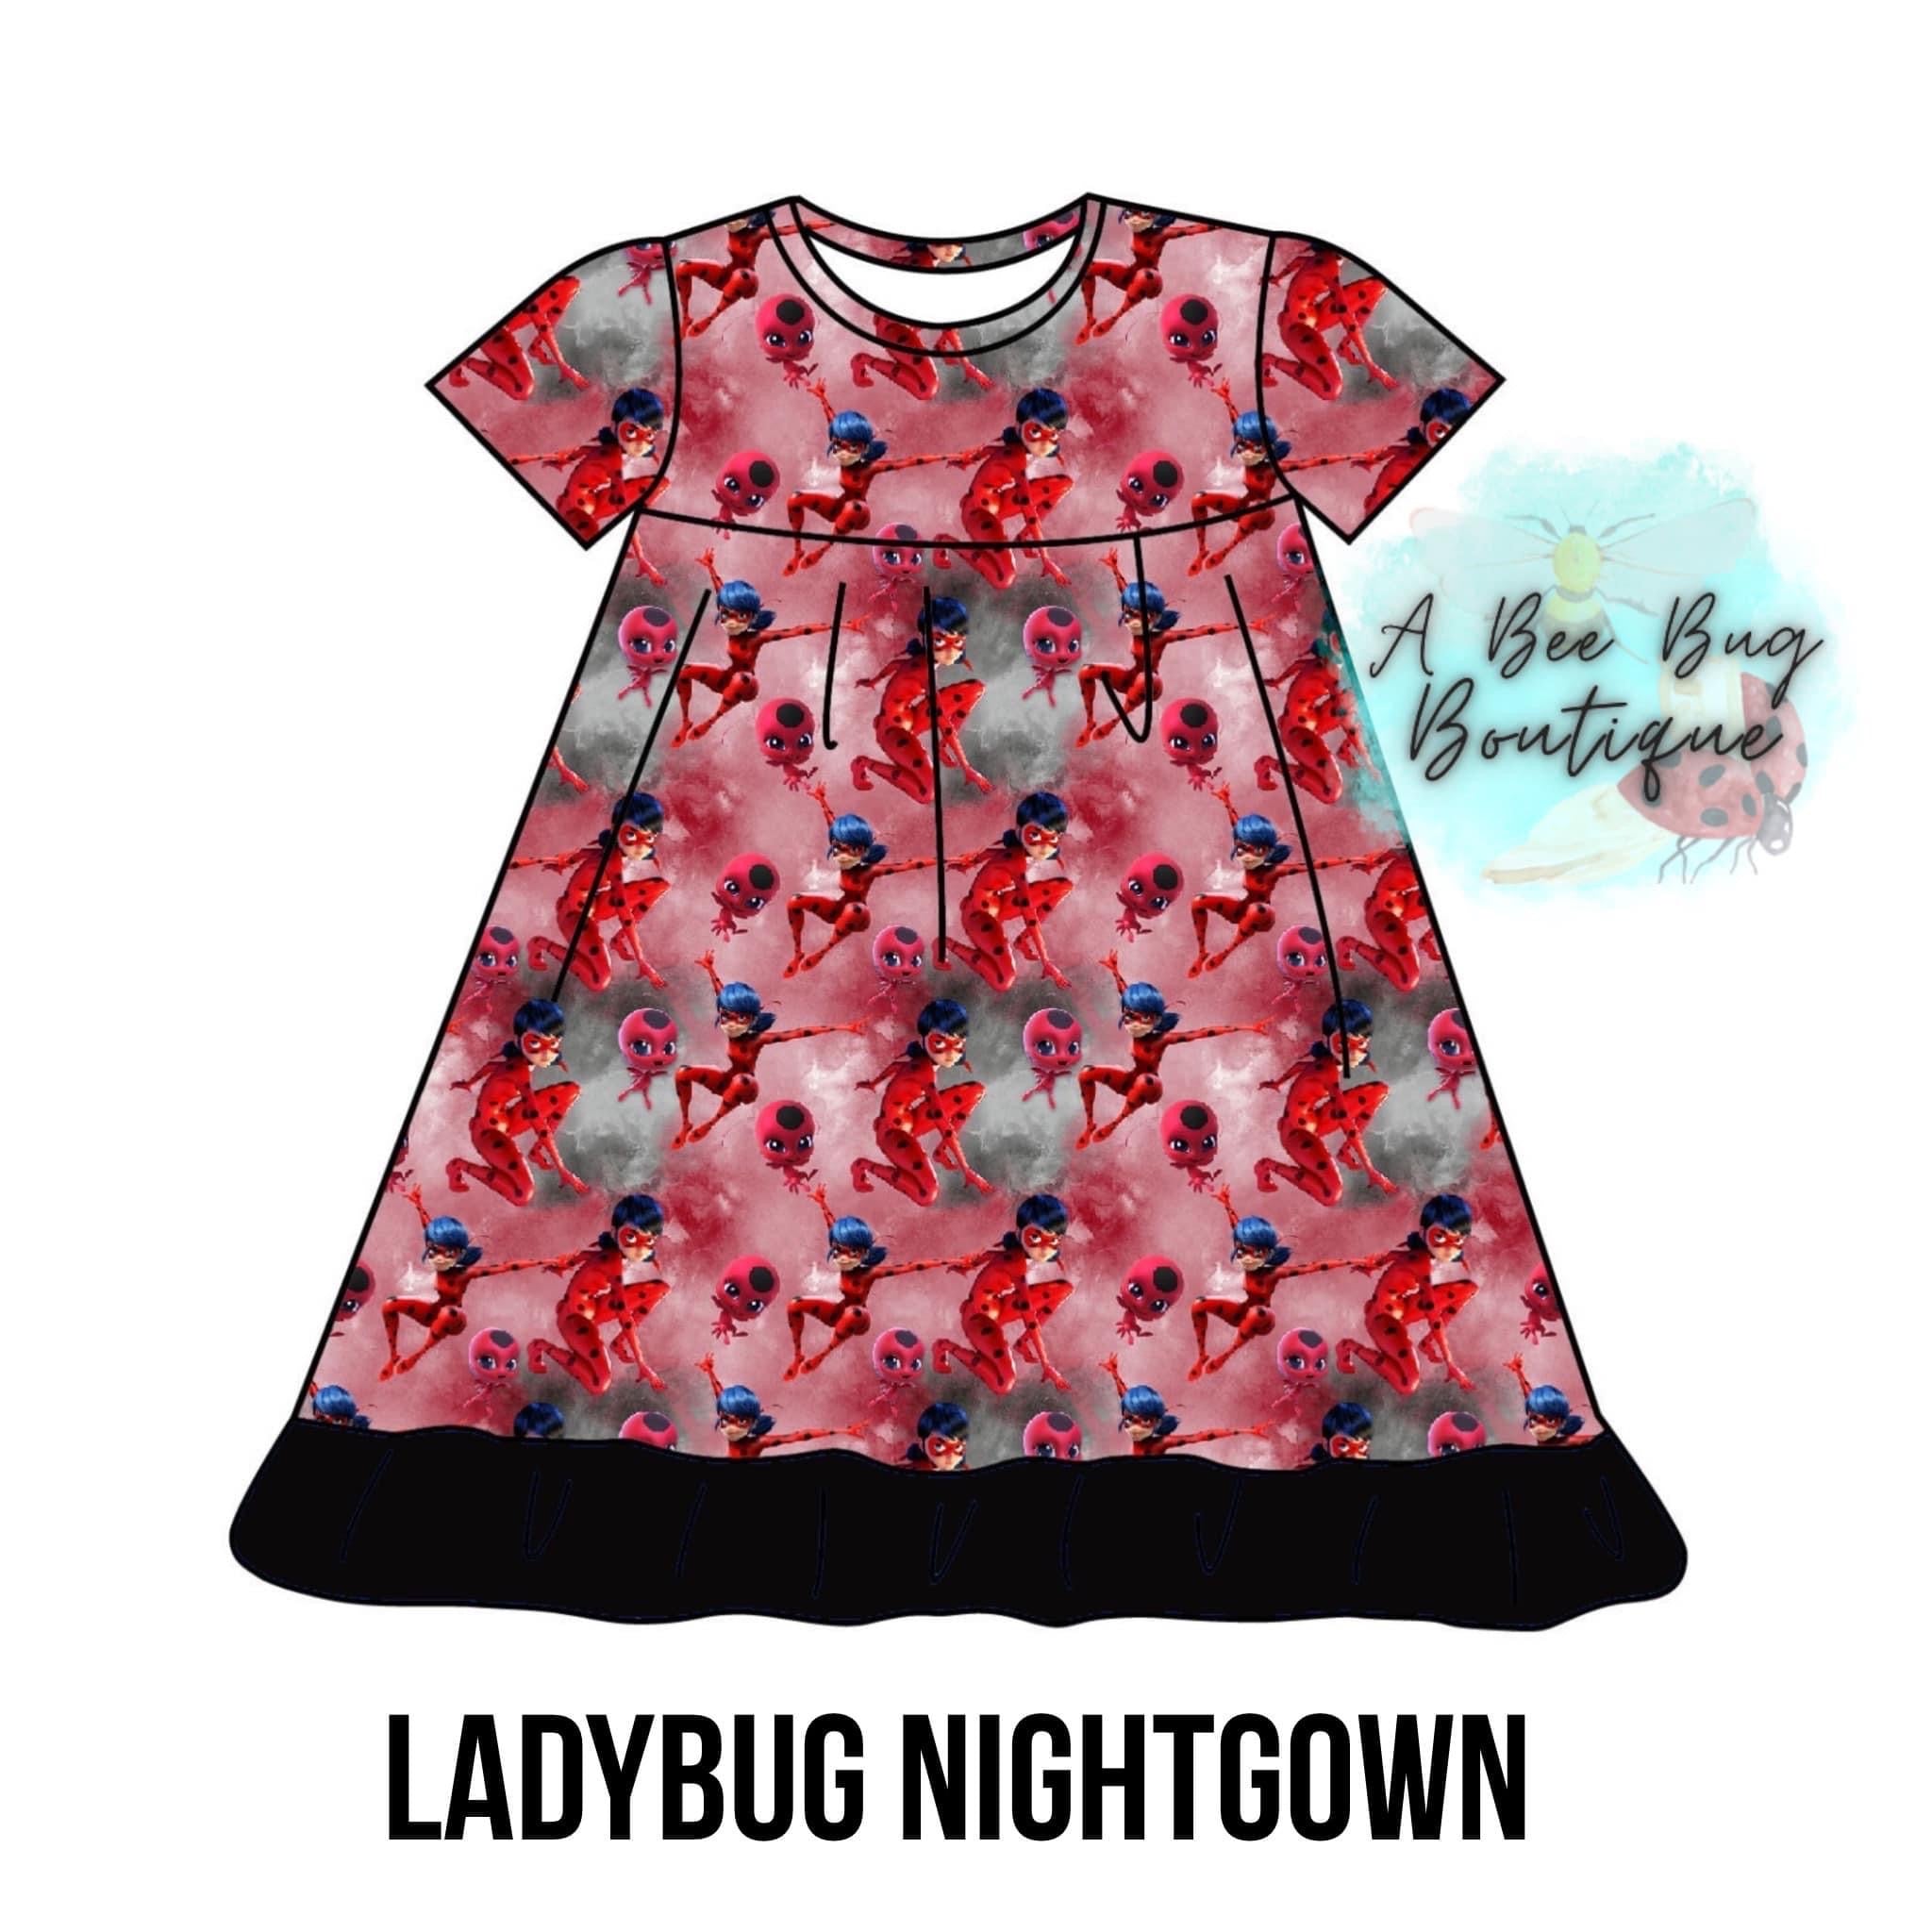 Ladybug Nightgown